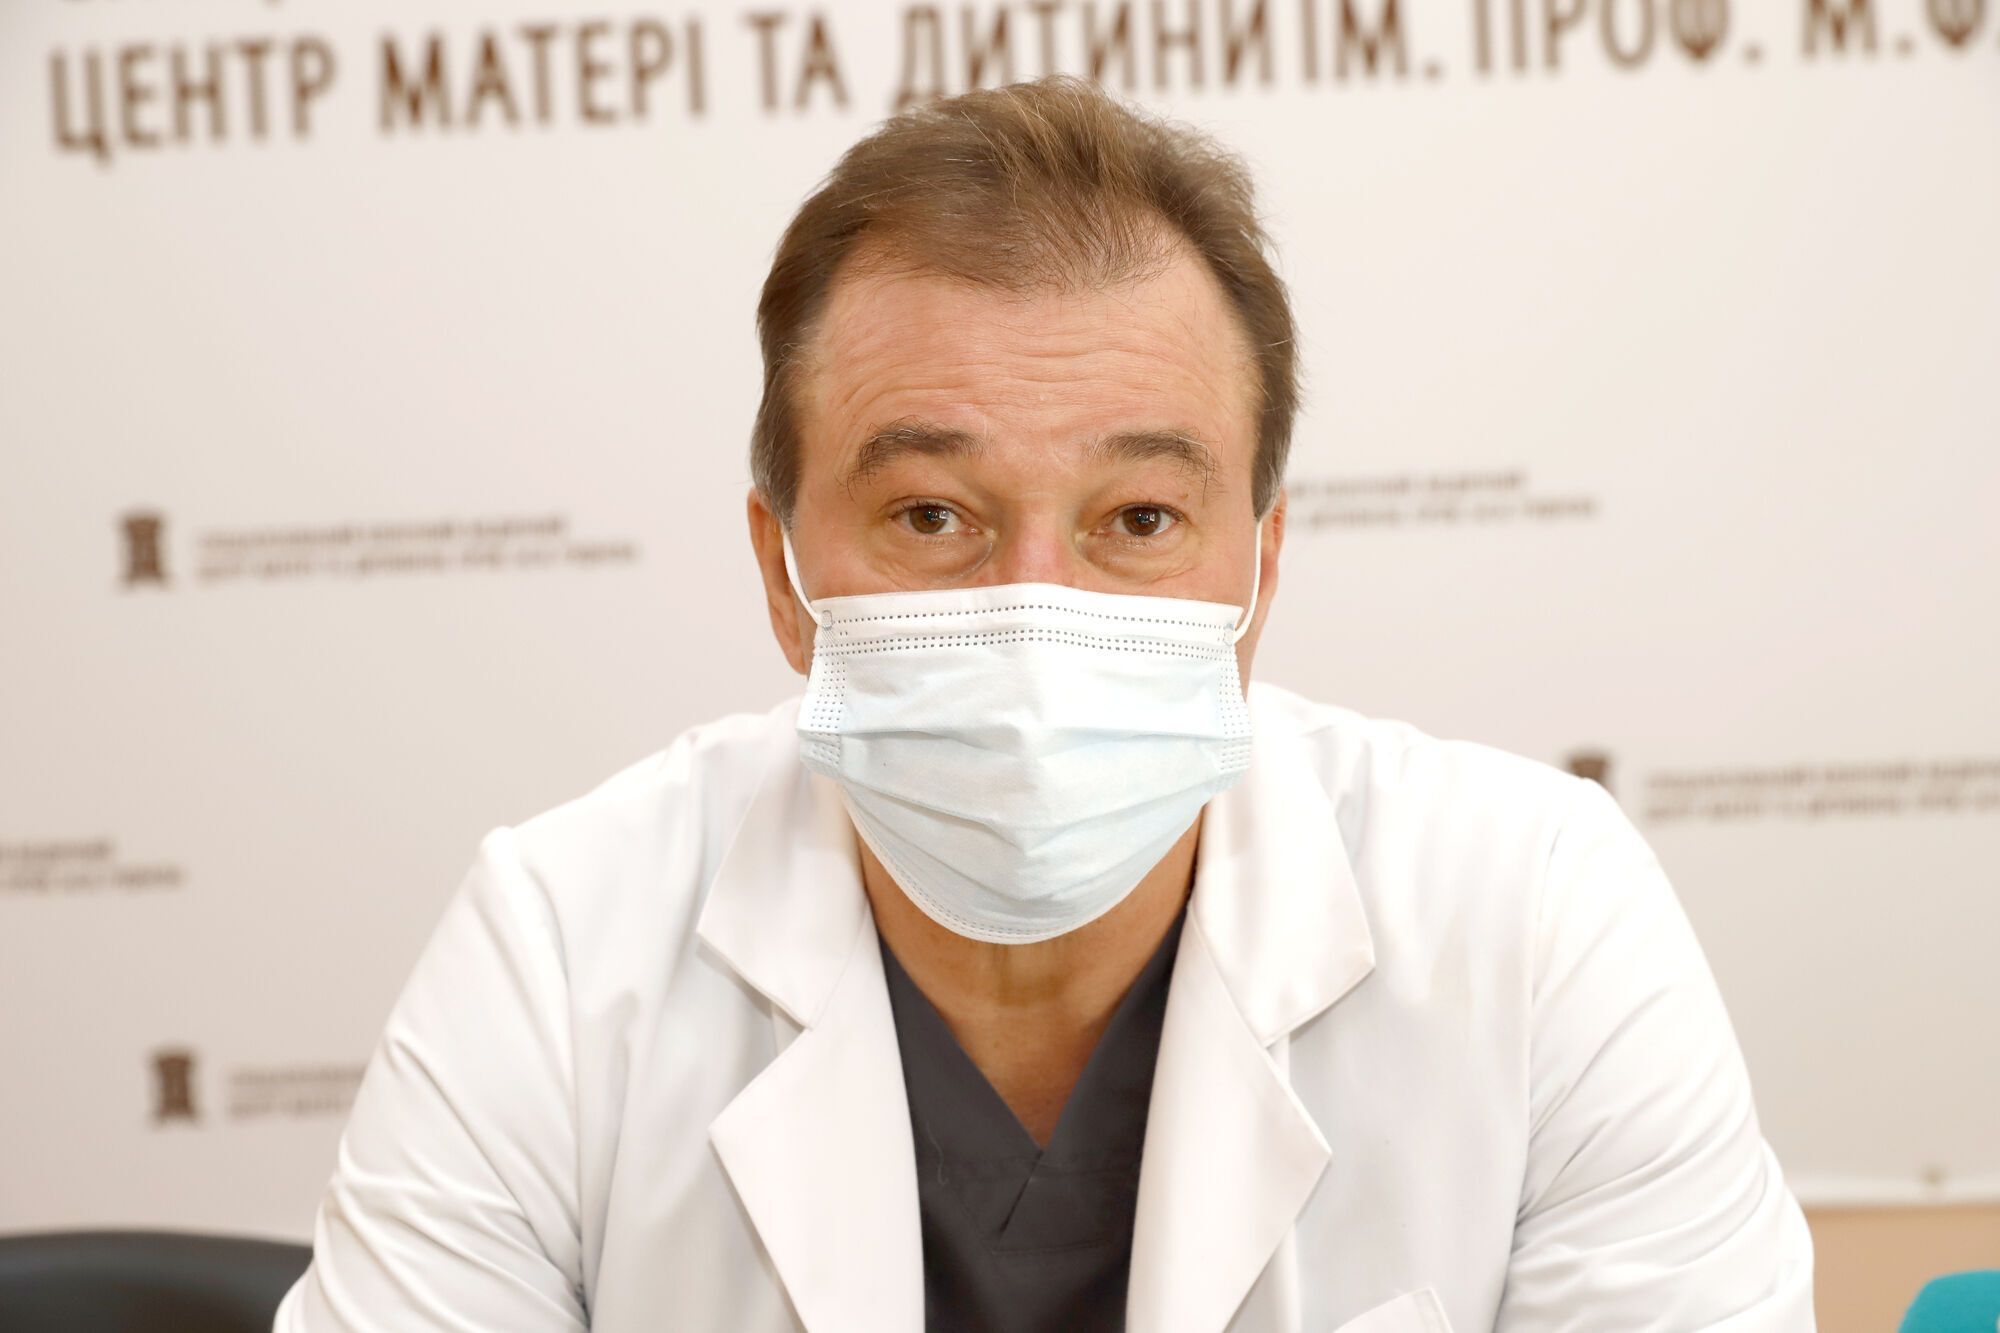 Заведующий кардиохирургическим отделением больницы Павел Павлов